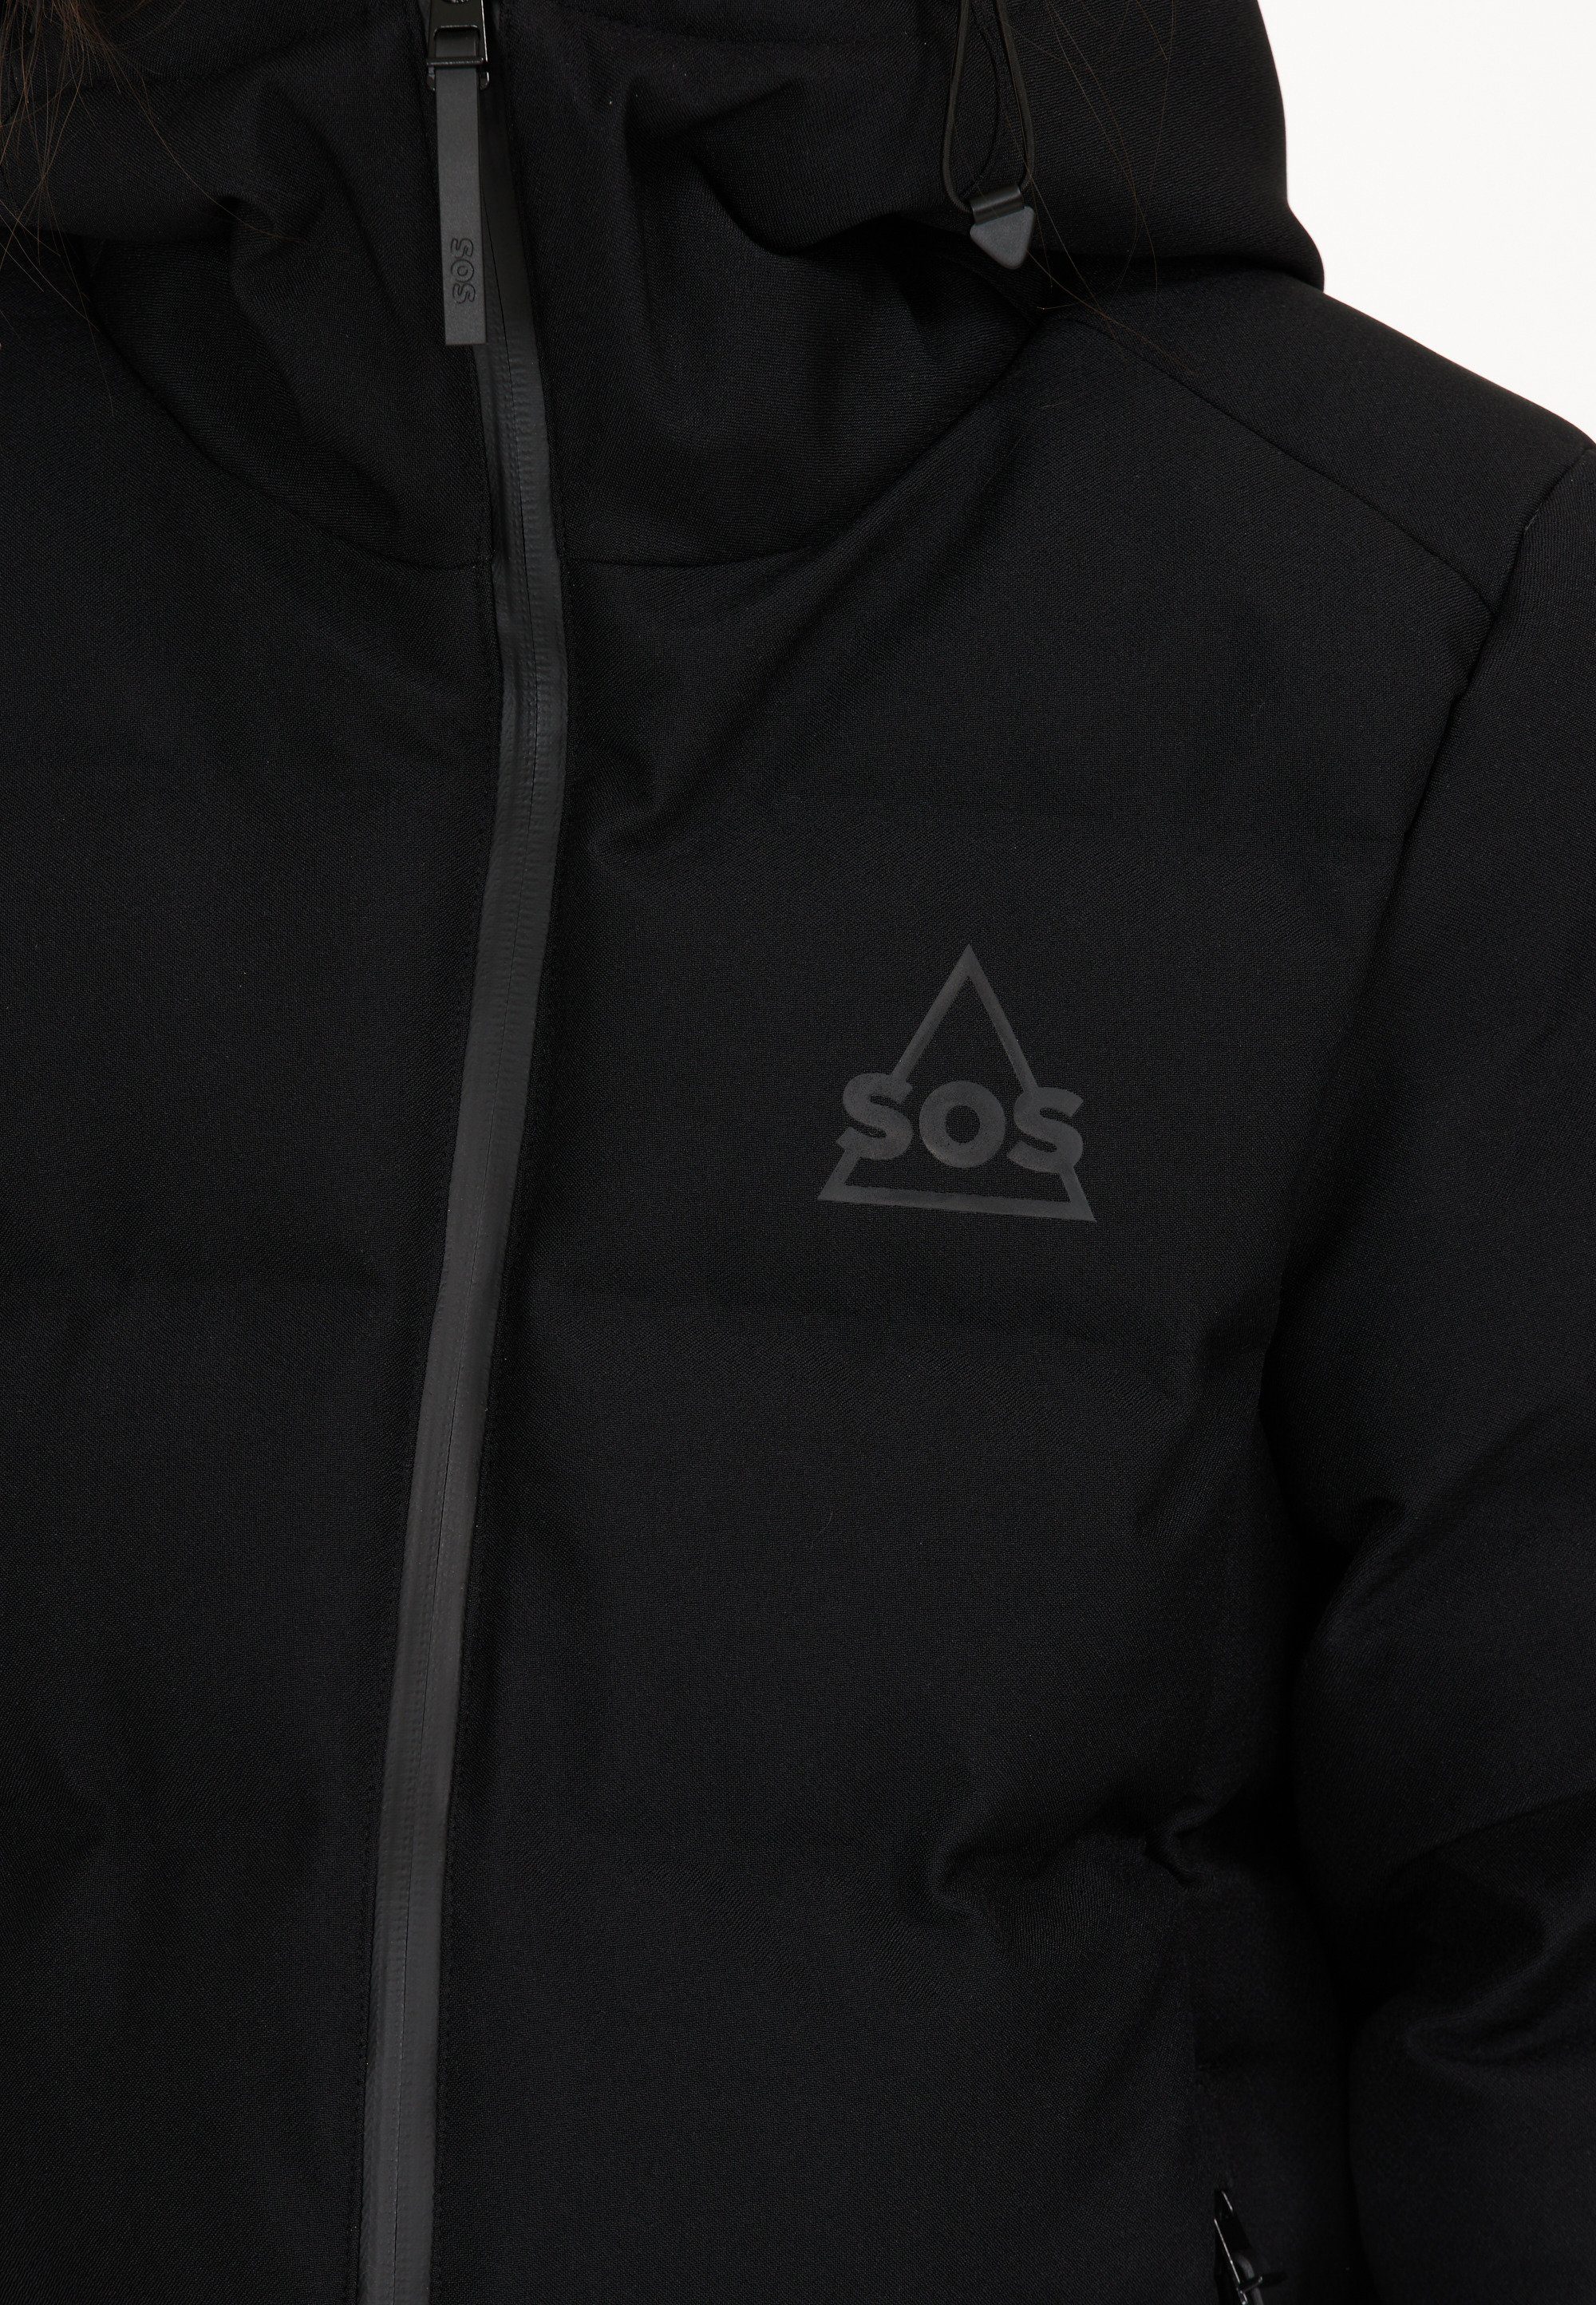 Skijacke Membran schwarz mit Zermatt wasserabweisender SOS